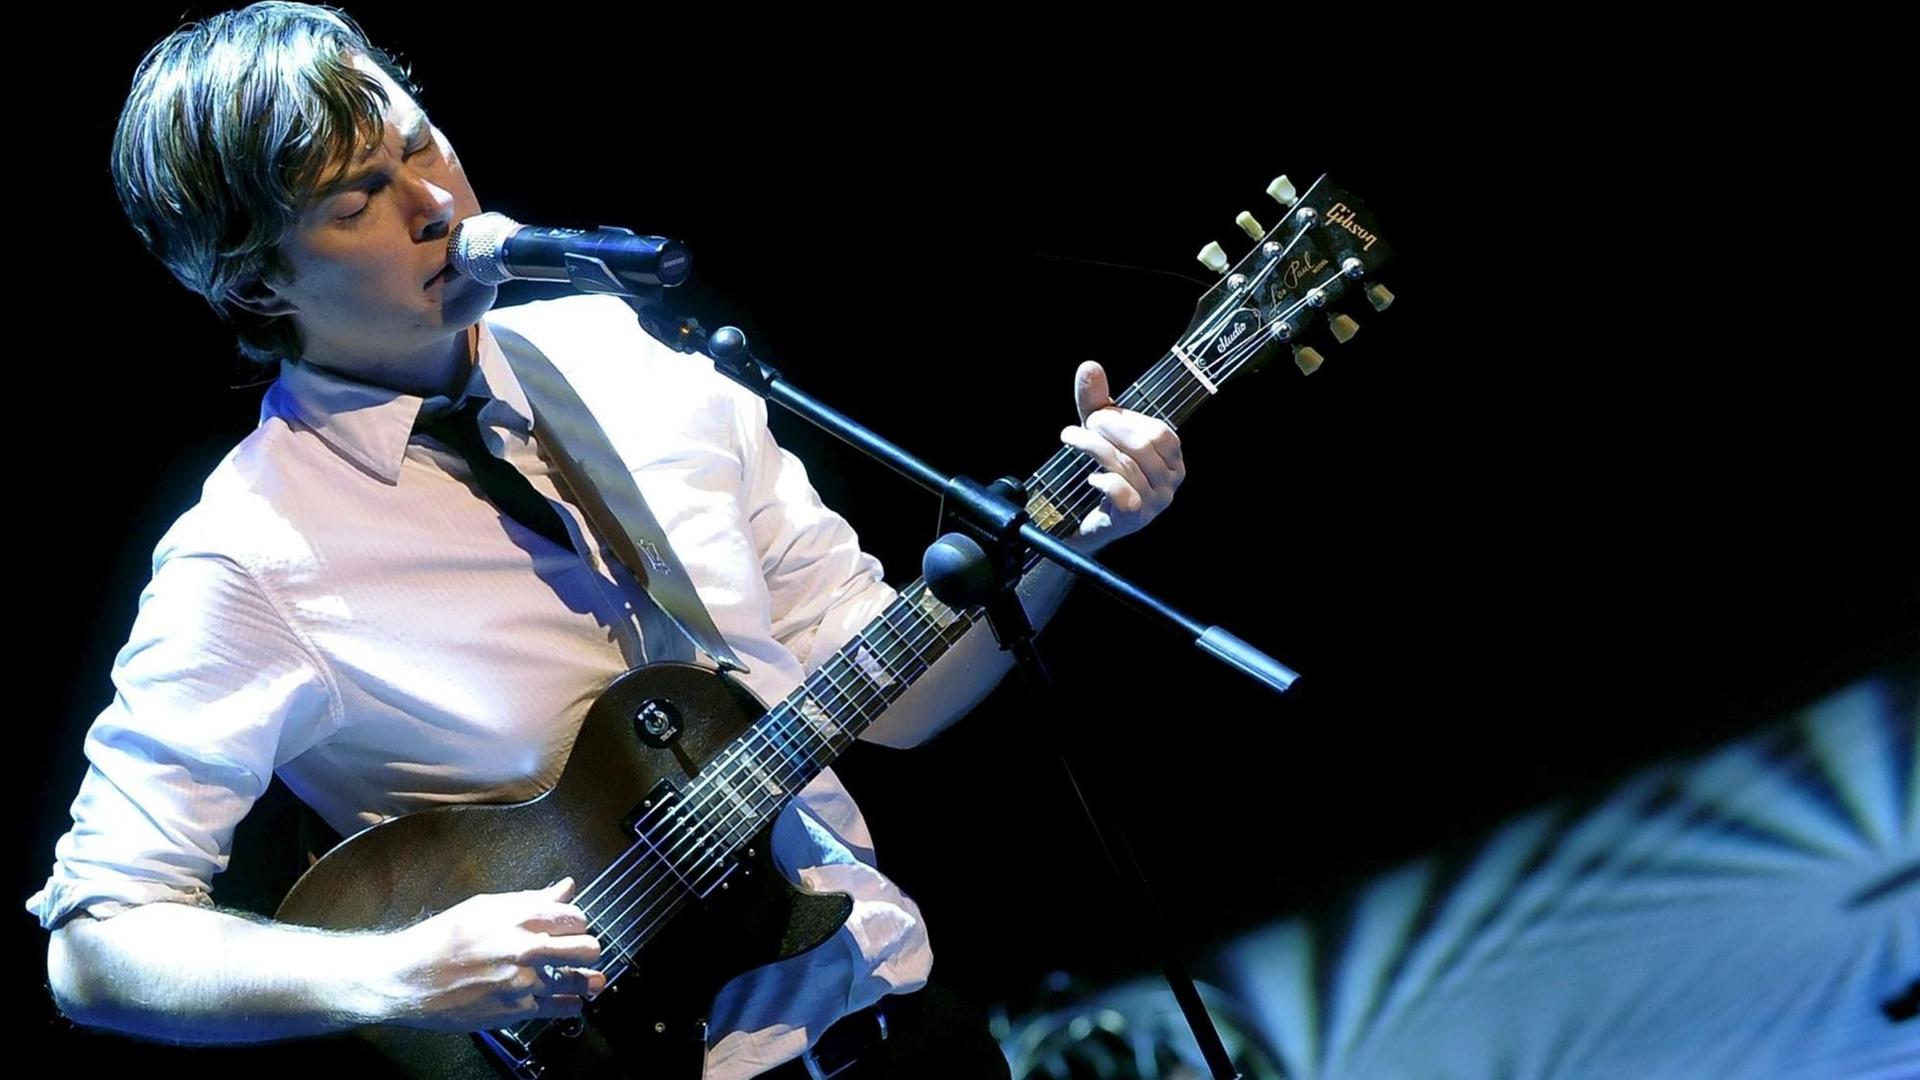 Auf einem schräg fotografierten Bild ist ein Mann im weißen Hemd zu sehen, der Gitarre spielt und in ein Mikrofon singt